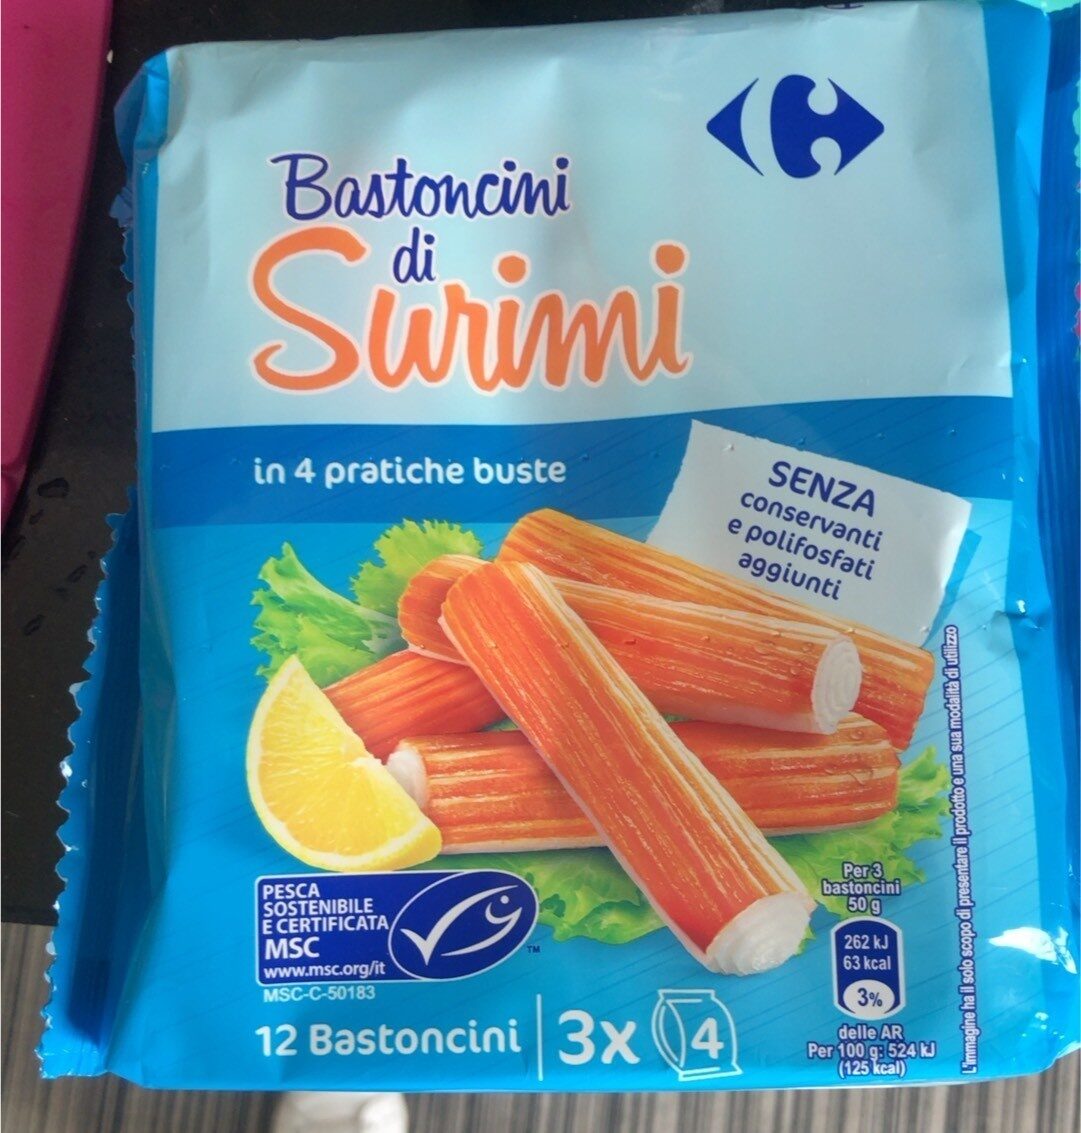 Bastoncini di surimi - Product - it